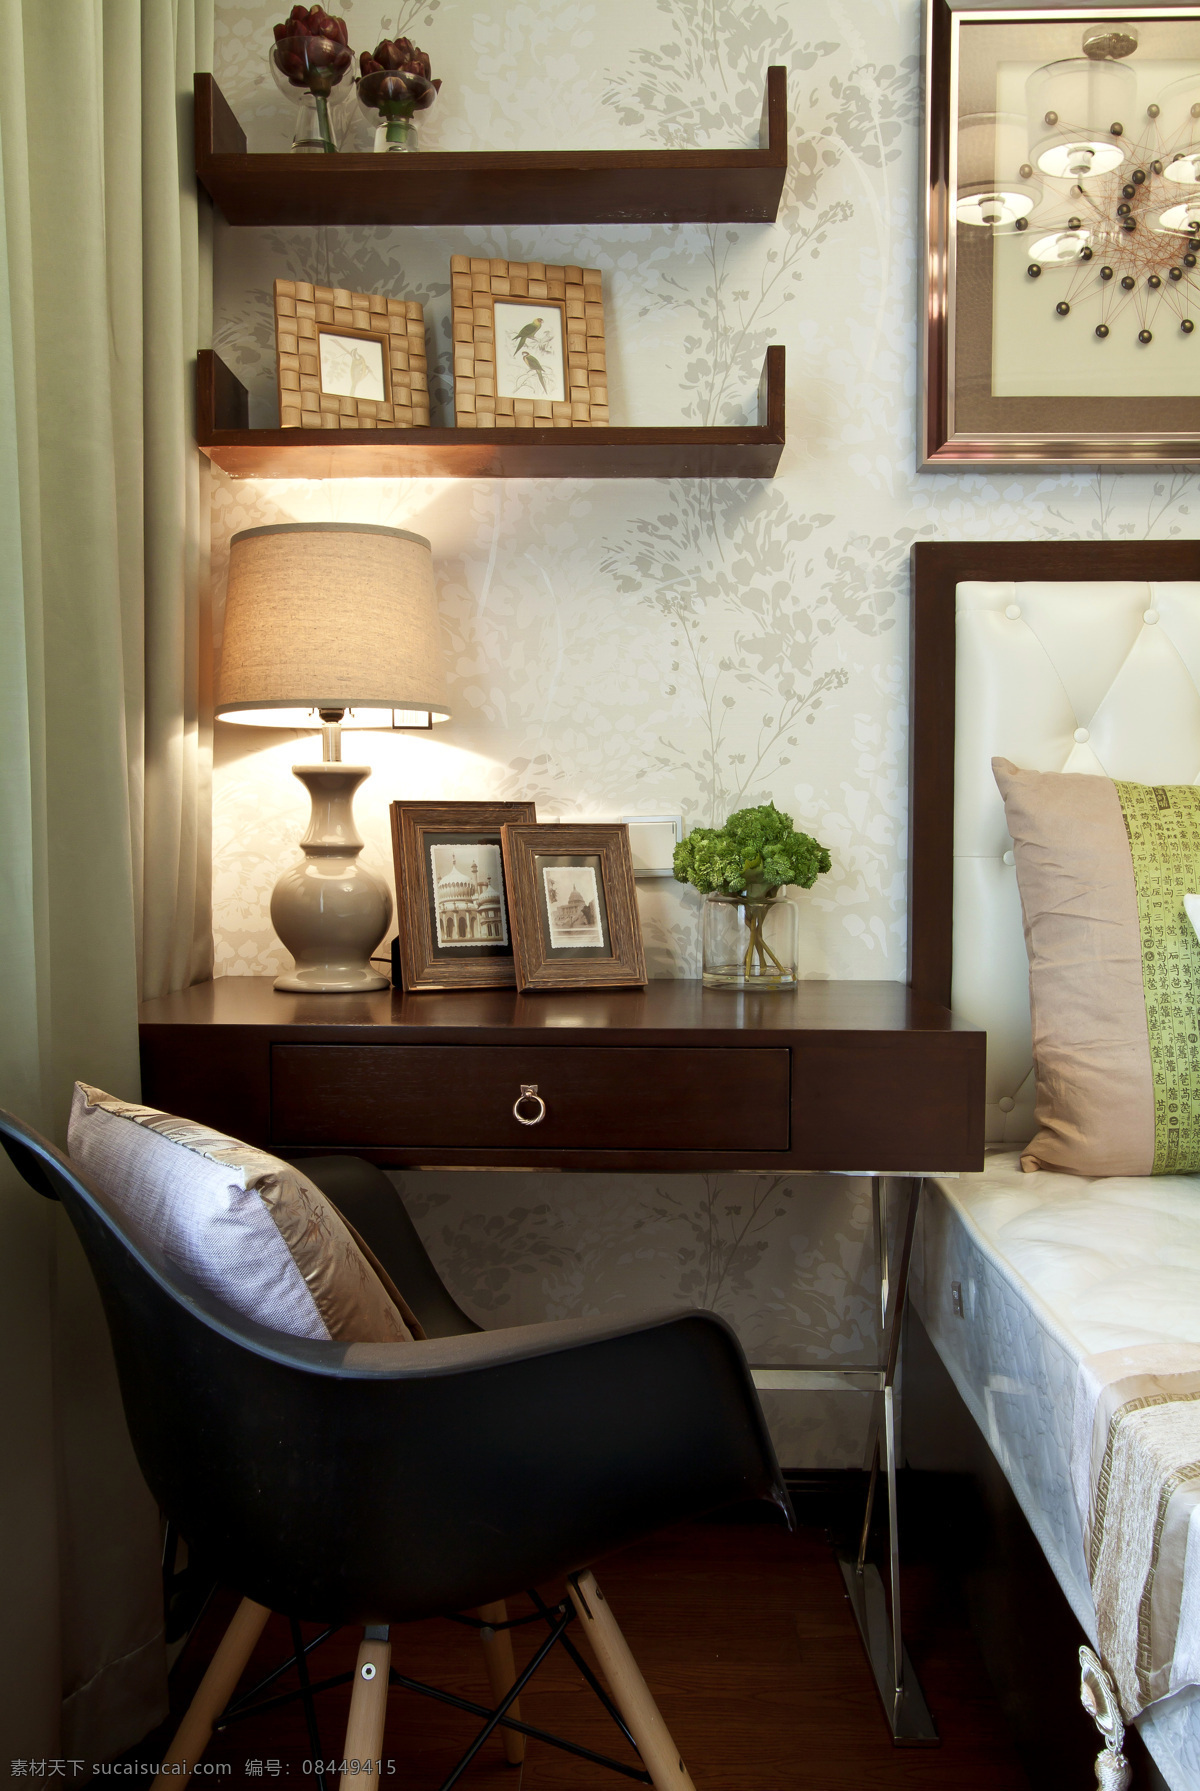 中式 时尚 风格 卧室 床头 桌子 效果图 中式风格 客厅装修 客厅床头桌子 高清大图